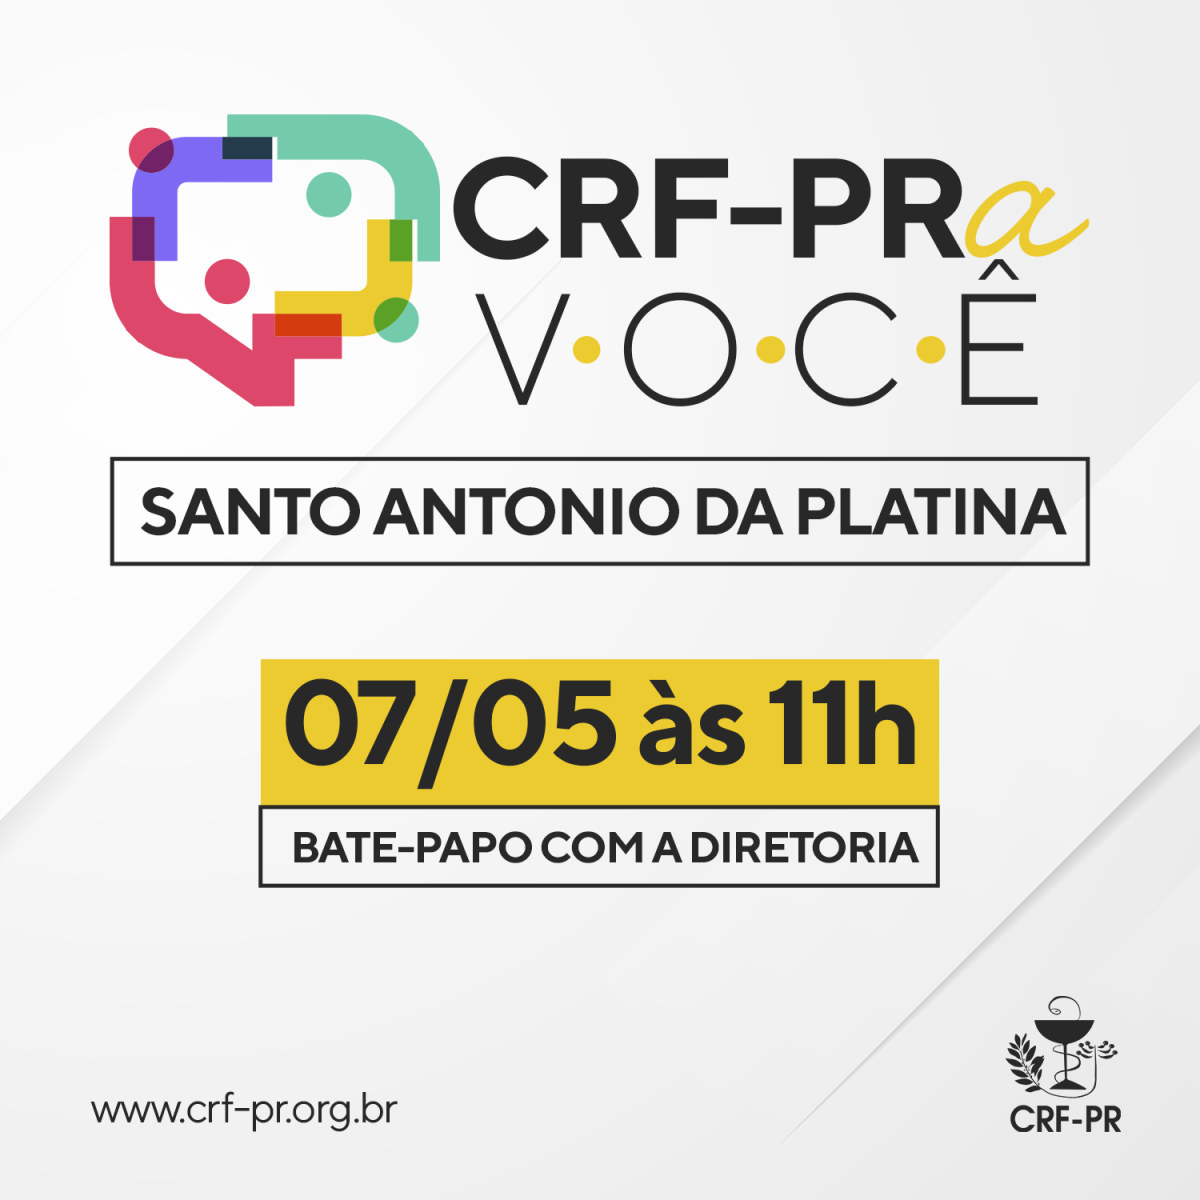 CRF-PRa Você - Santo Antônio da Platina